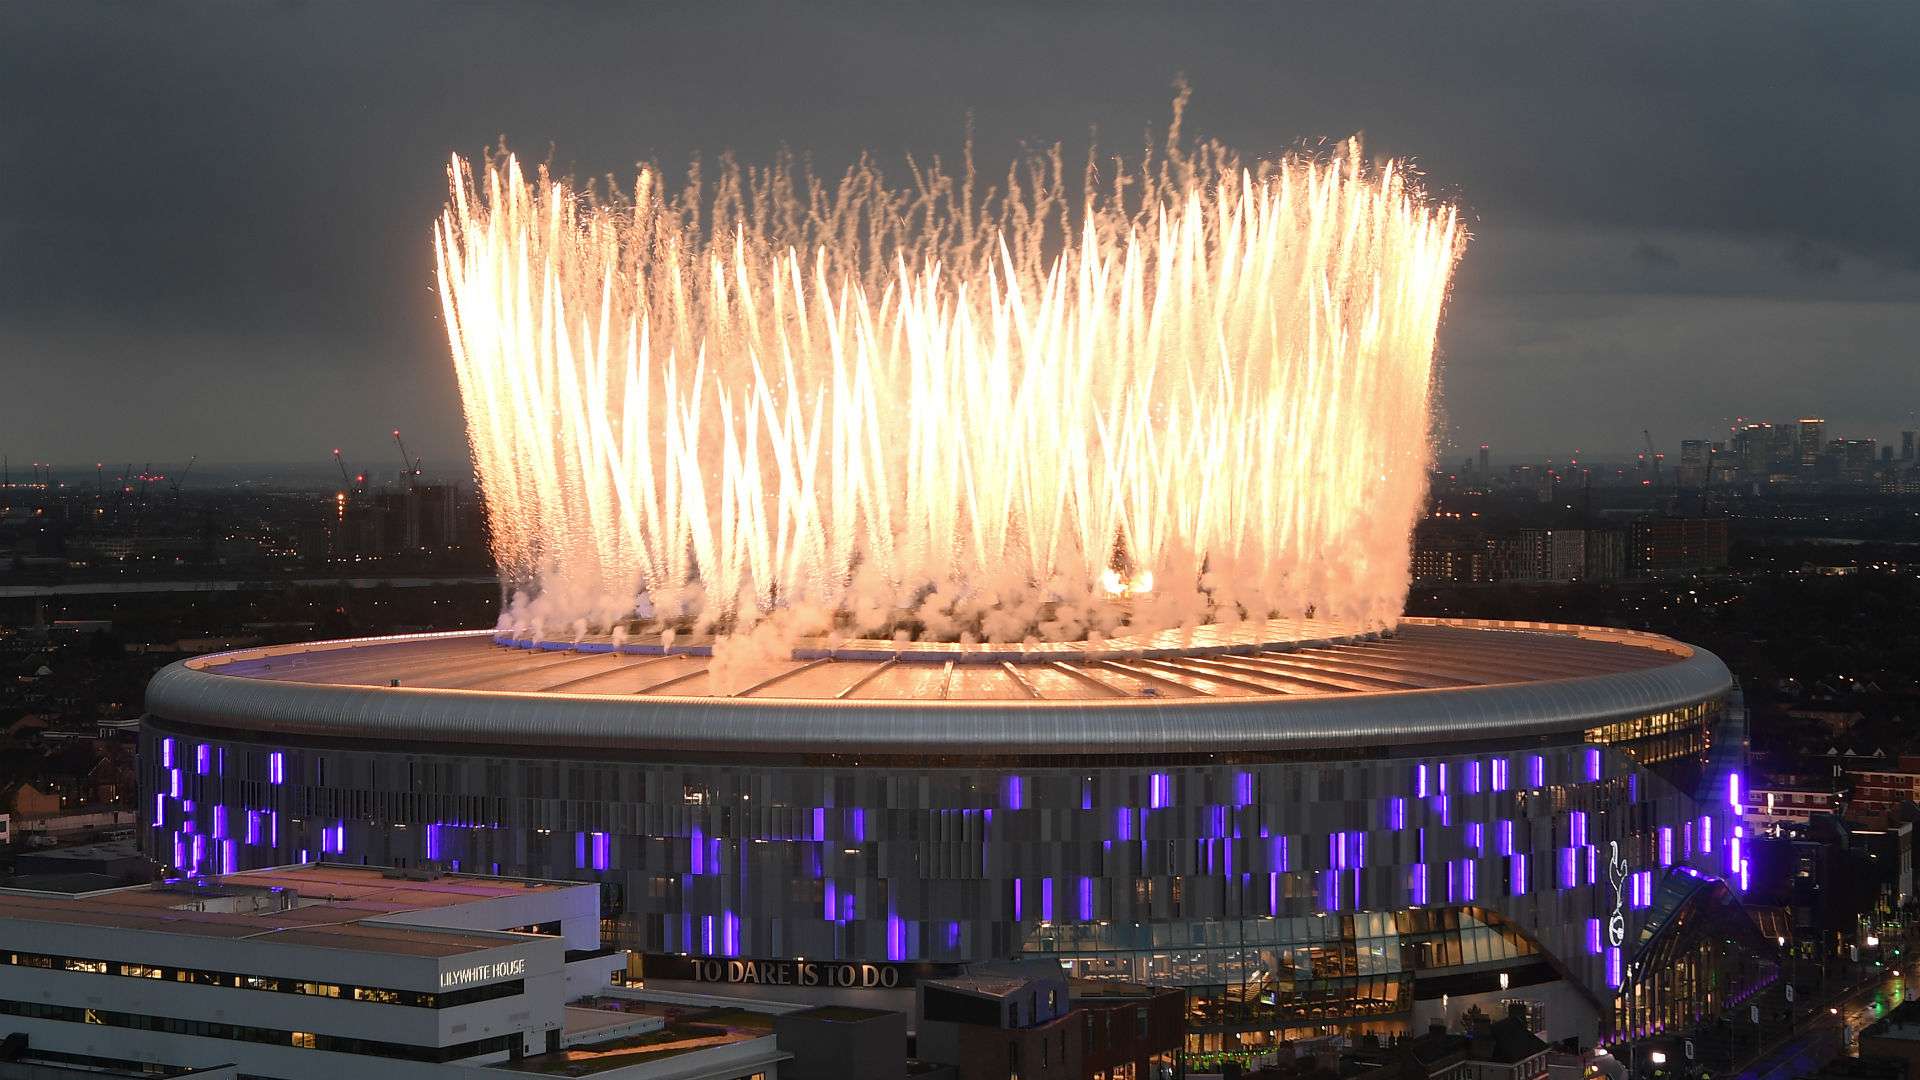 Tottenham Hotspur Stadium 2019